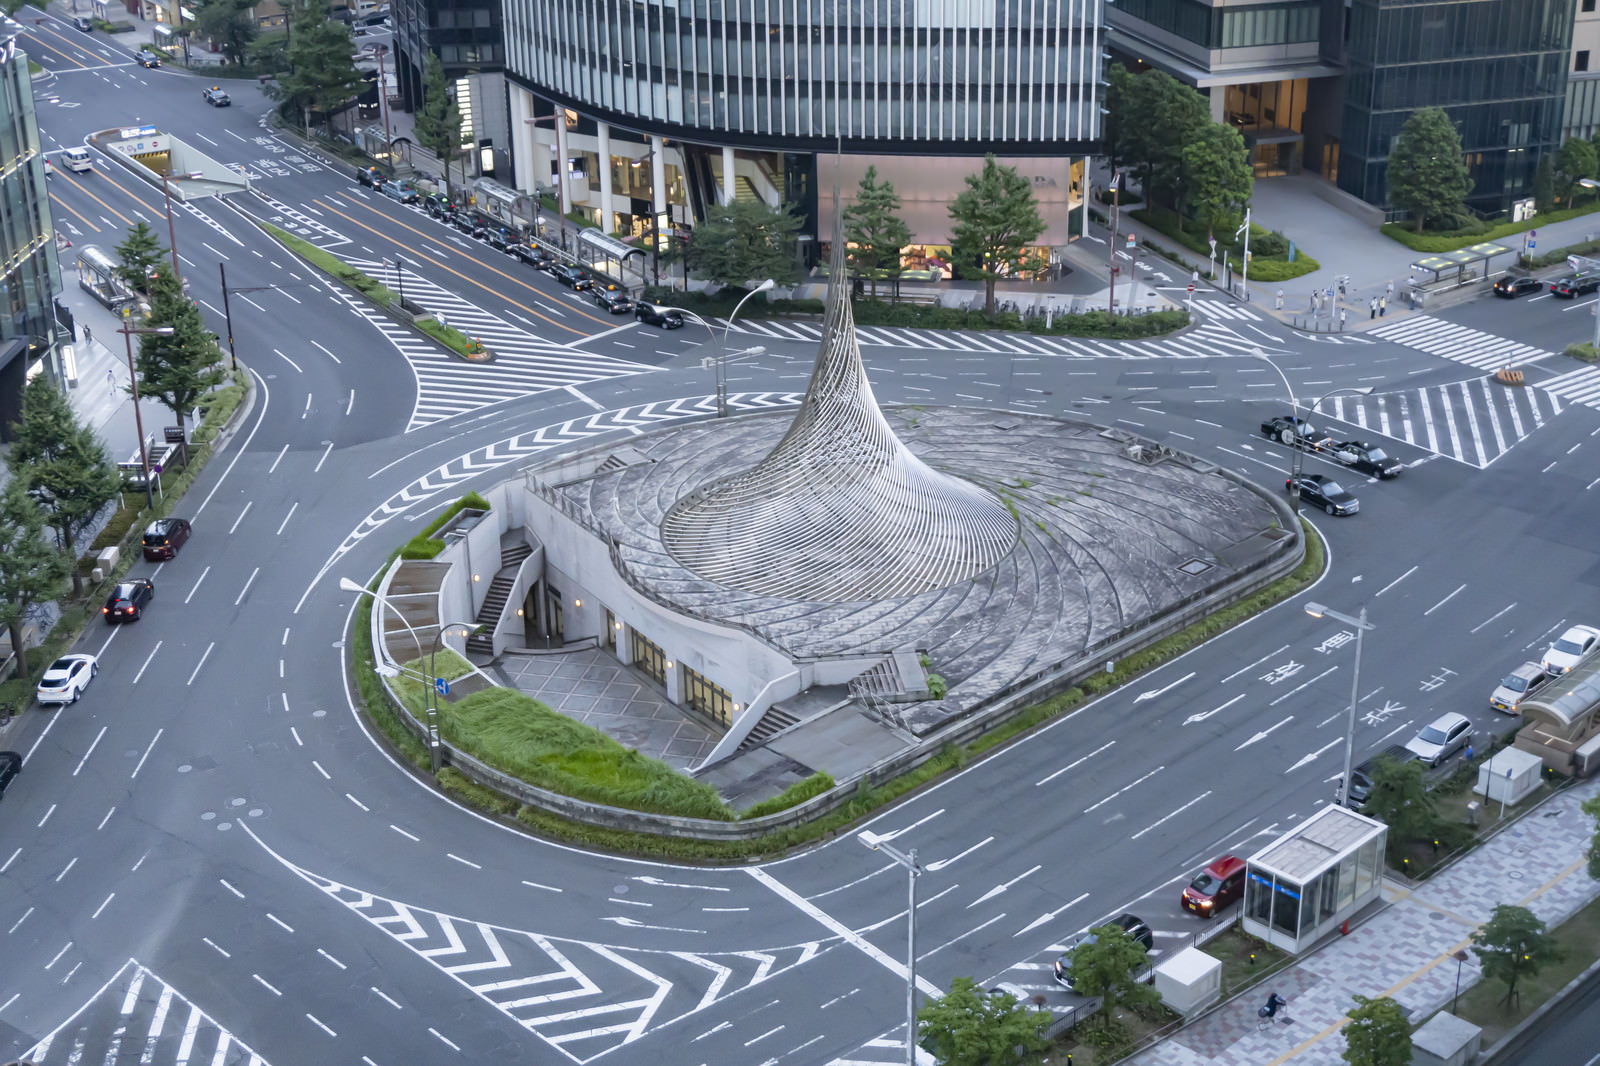 「名古屋駅前にある円錐状のモニュメント「飛翔」」の写真